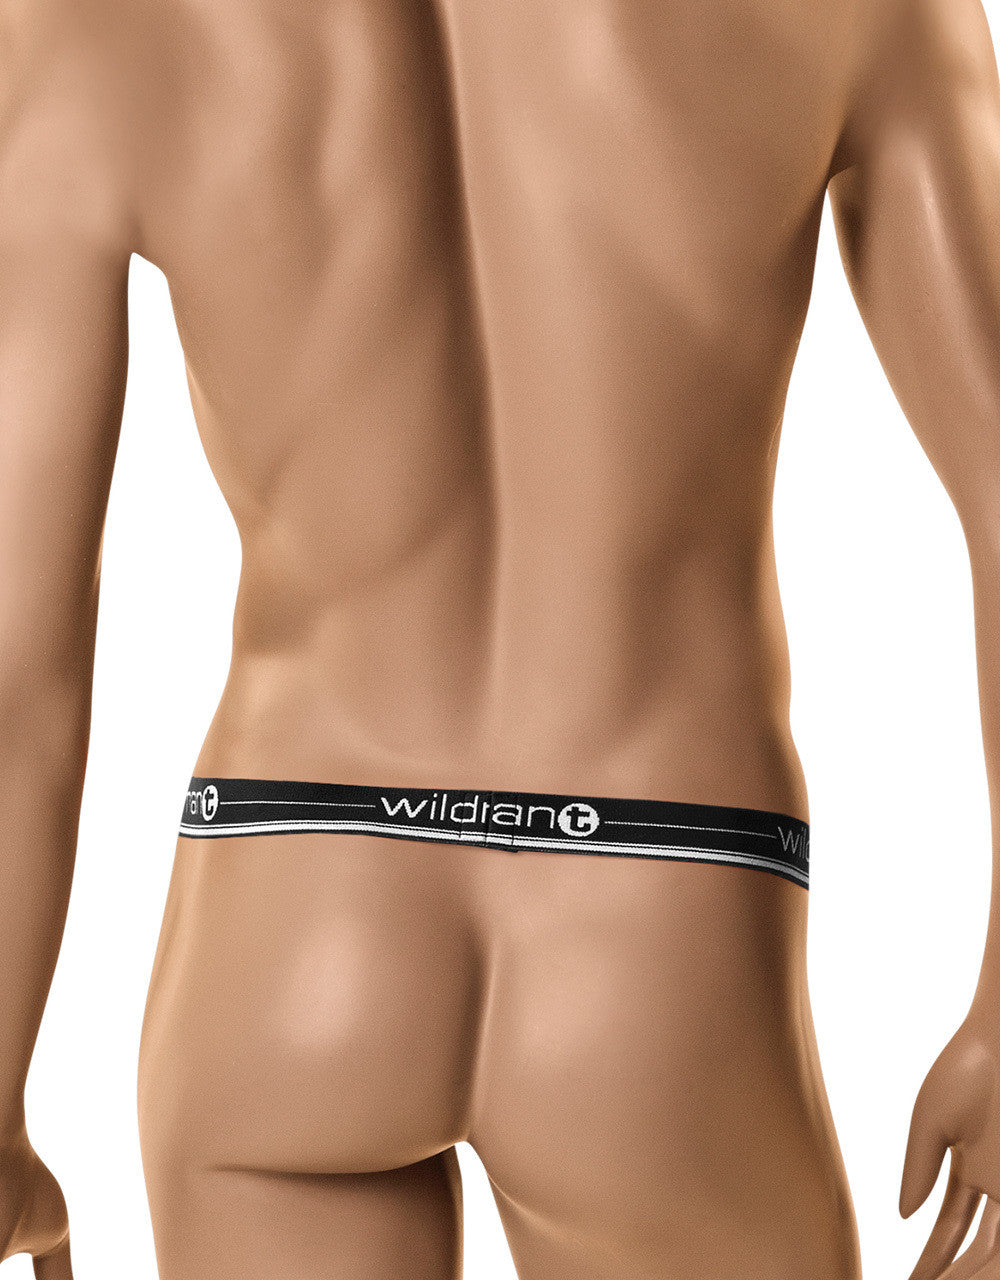 WildmanT The Ball Lifter® Protruder Black - Big Penis Underwear, WildmanT - WildmanT